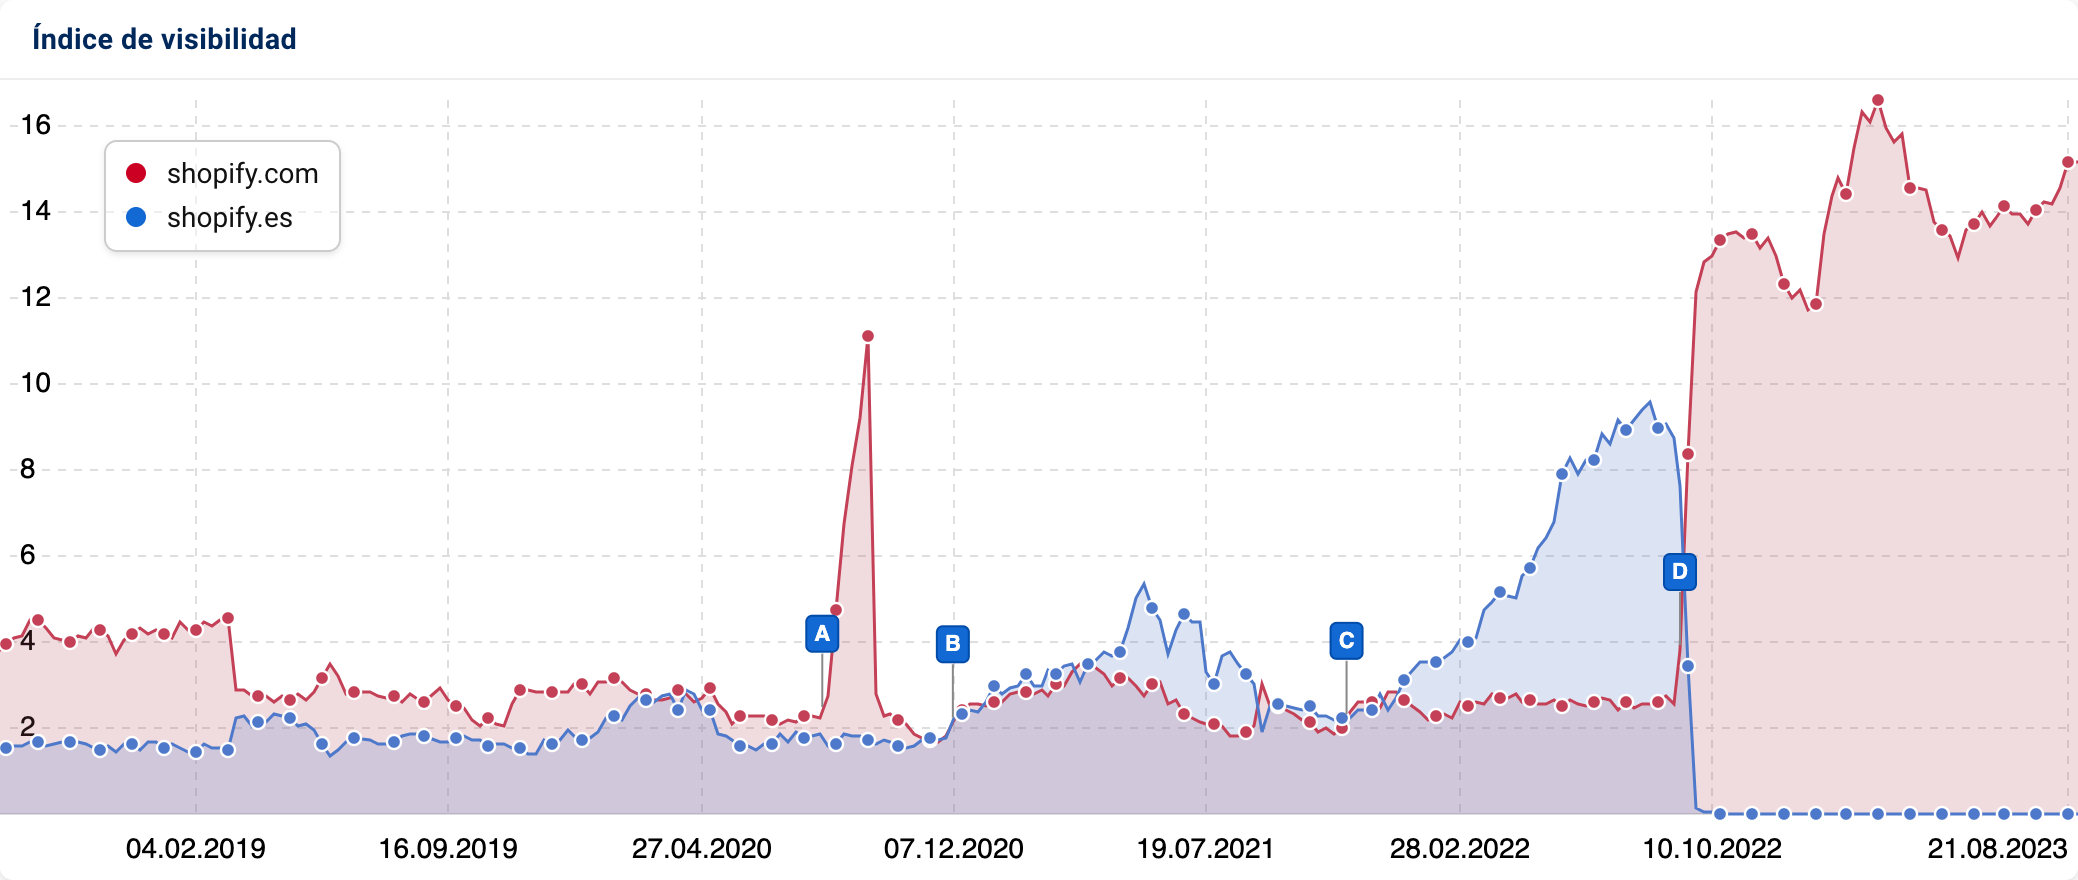 Grafico con el historial del indice de visibilidad en un cambio de TLD de shopify.es a shopify.com